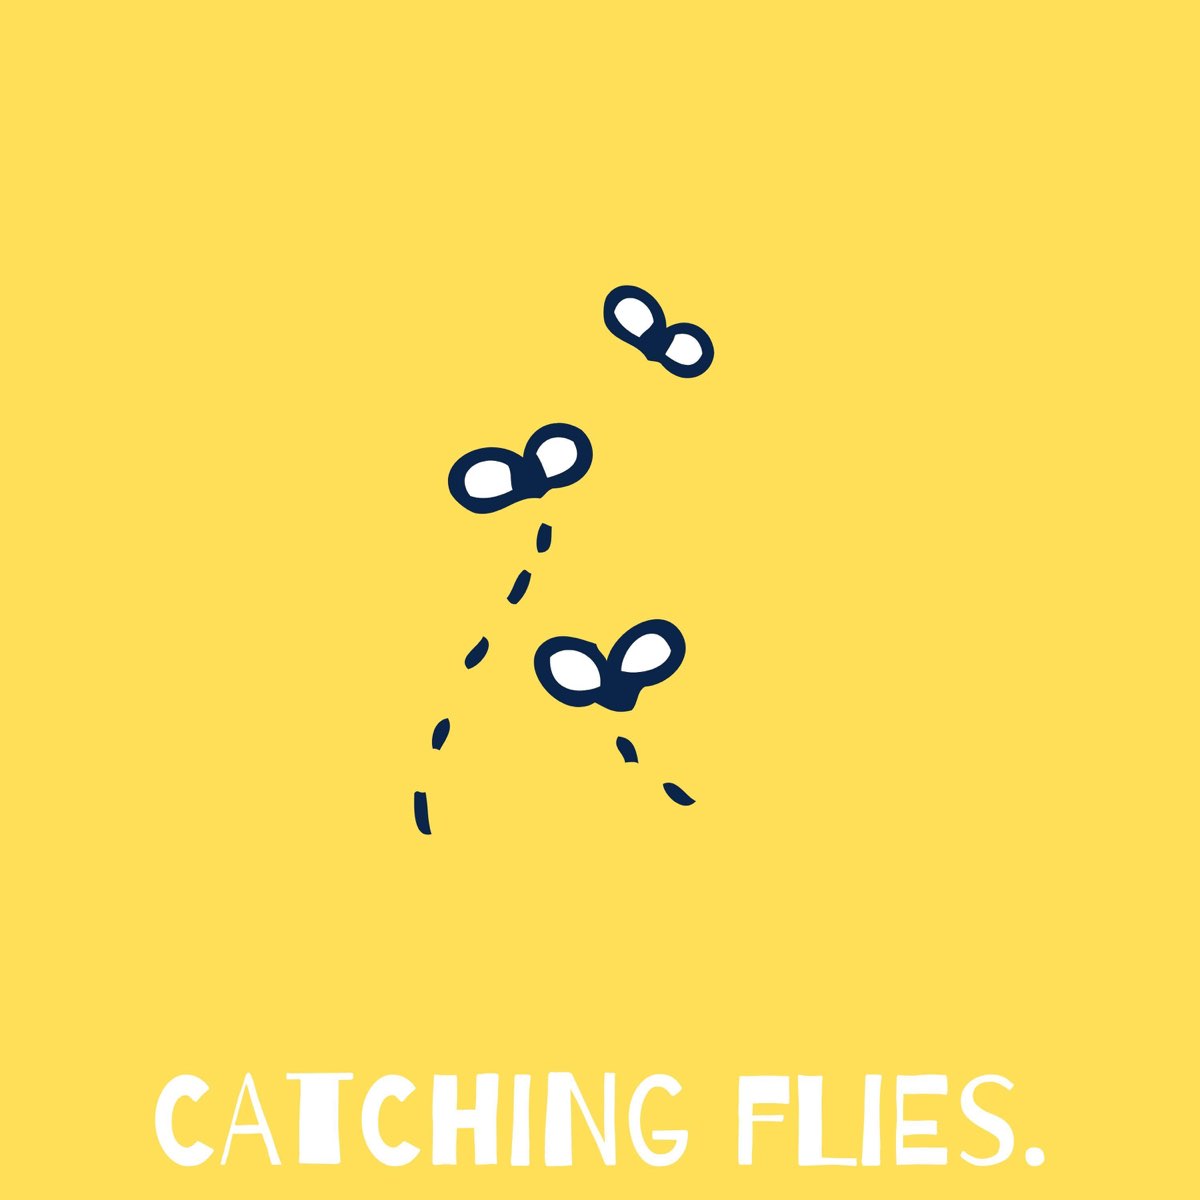 Fly catch. Catching Flies. Рисунки из catch альбомы легко и просто. Песня ванна Флик Флай. Catching Flies - Orsay.